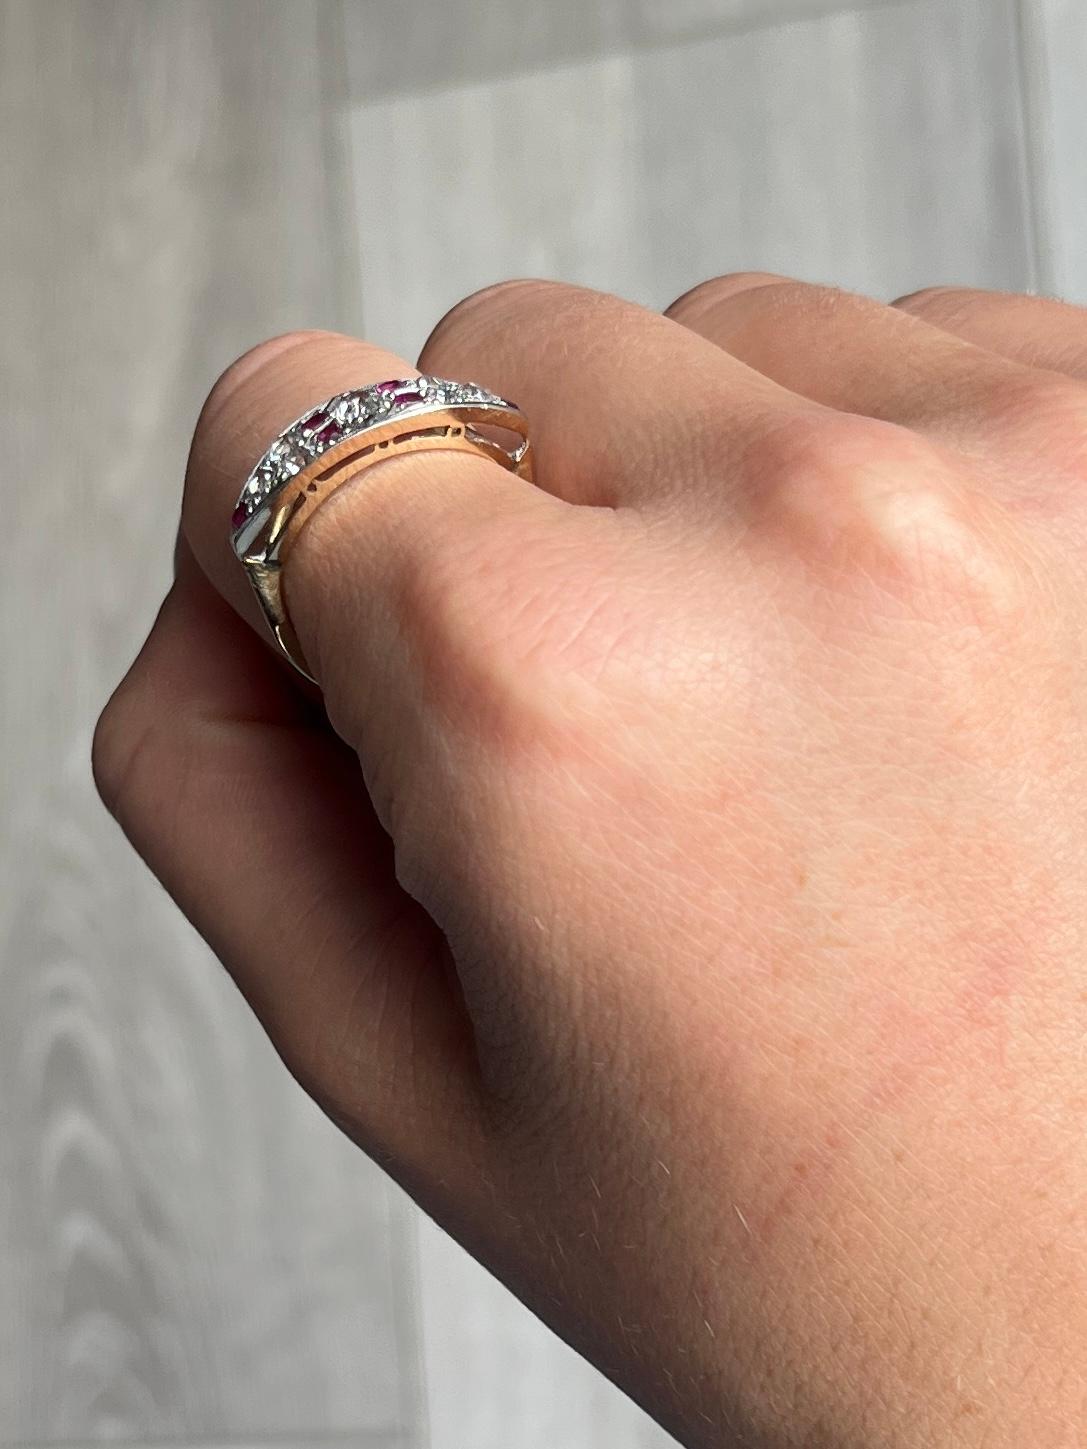 Dieser wunderschöne Art-Déco-Ring enthält einen zentralen Diamanten von 25 pt und insgesamt 1 Karat an Diamanten. Jeder Rubin misst 5 Pence und alle Steine sind in Platin gefasst.

Ring Größe: O oder 7 1/4 
Breite des Bandes: 7,5 mm 